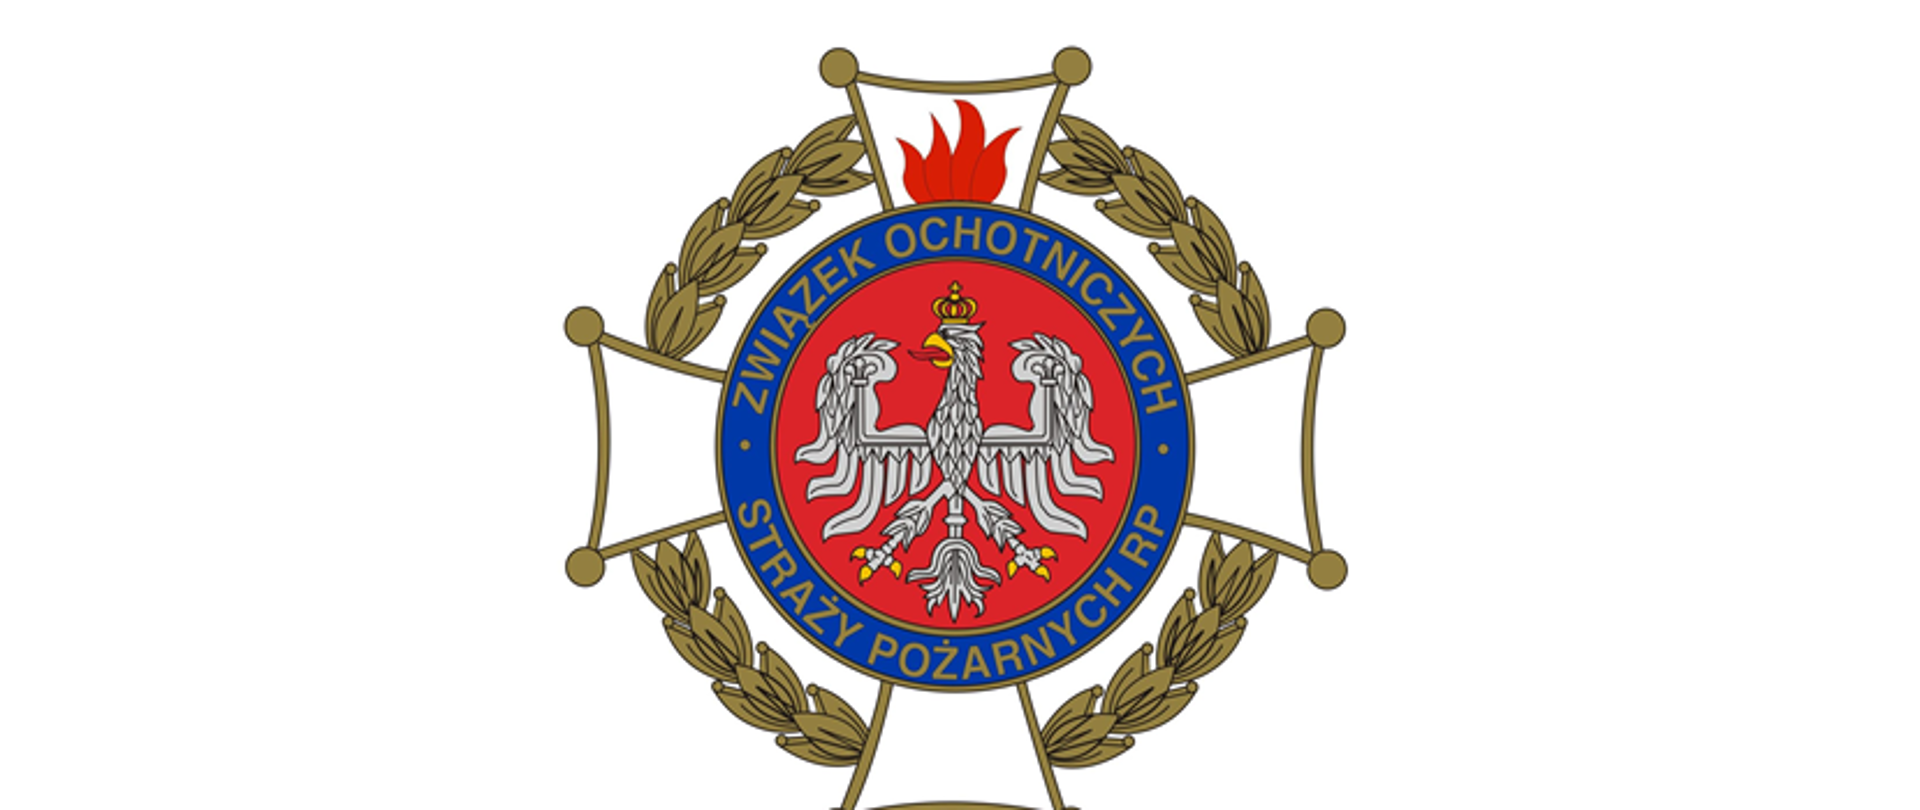 Zdjęcie przedstawia krzyż Związku Ochotniczych Straży Pożarnych. W środku znaku znajduje się biały orzeł w korownie. W jego obwodzie napisany jest napis Związek Ochotniczych Straży Pożarnych RP.